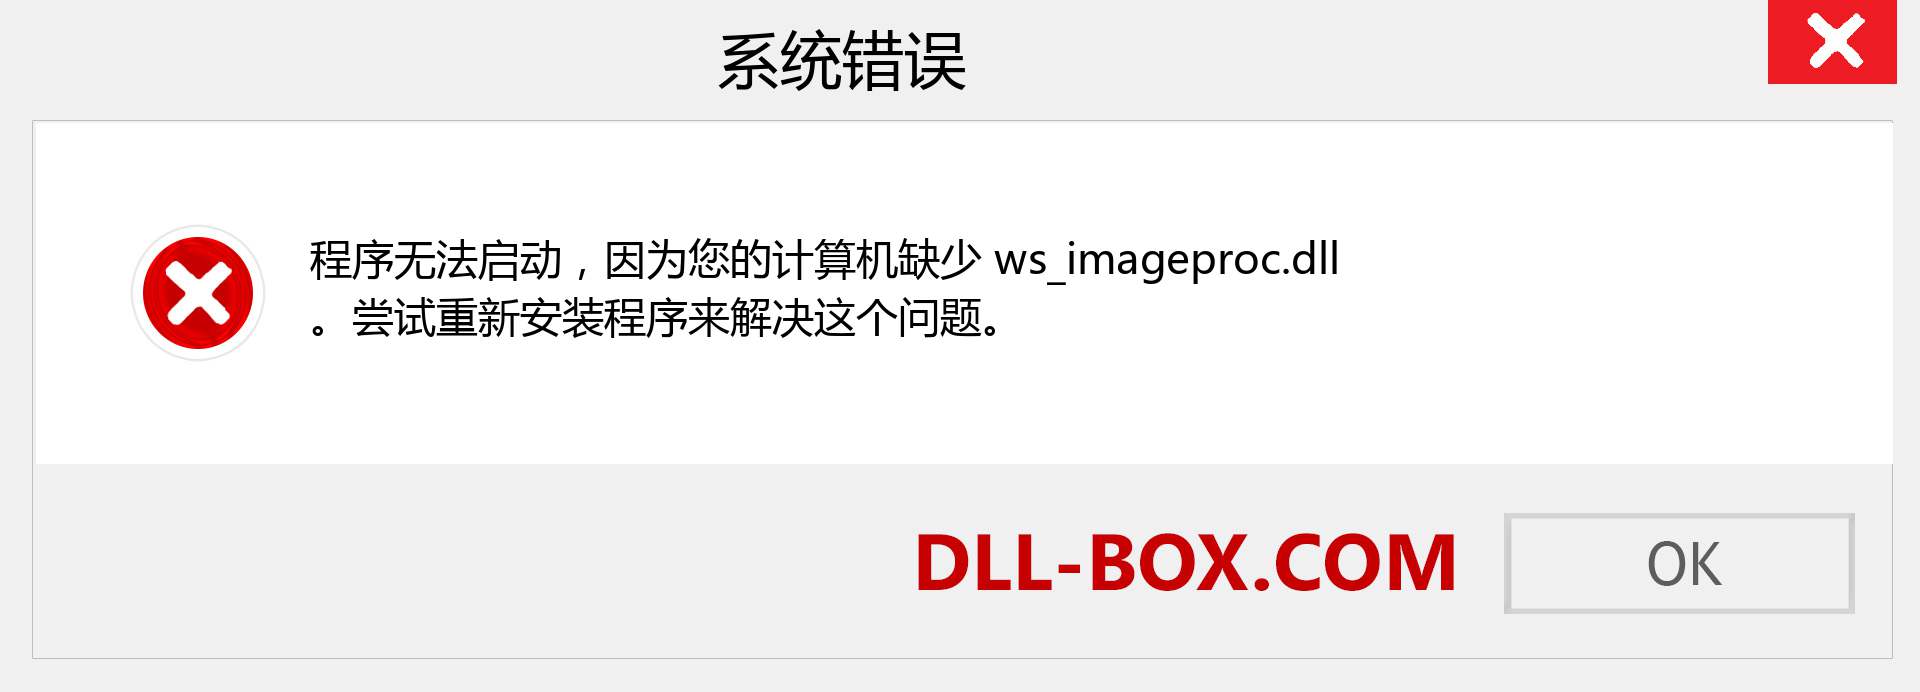 ws_imageproc.dll 文件丢失？。 适用于 Windows 7、8、10 的下载 - 修复 Windows、照片、图像上的 ws_imageproc dll 丢失错误